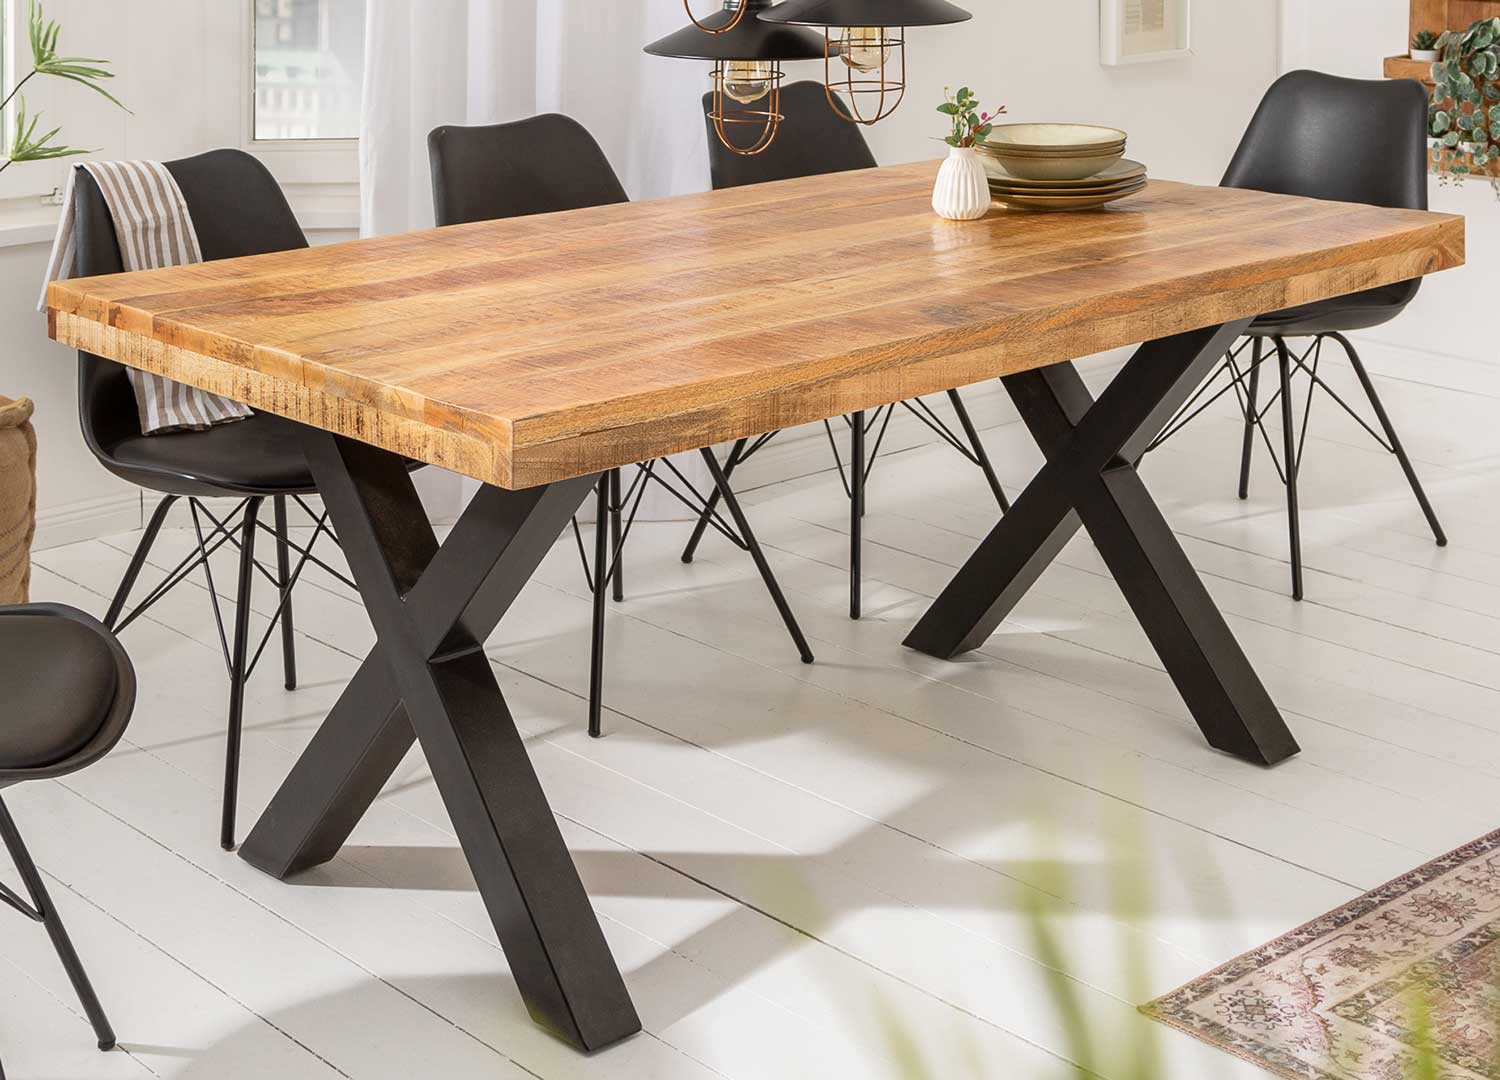 Table salle à manger en bois - Pied en X noir pour salle à manger